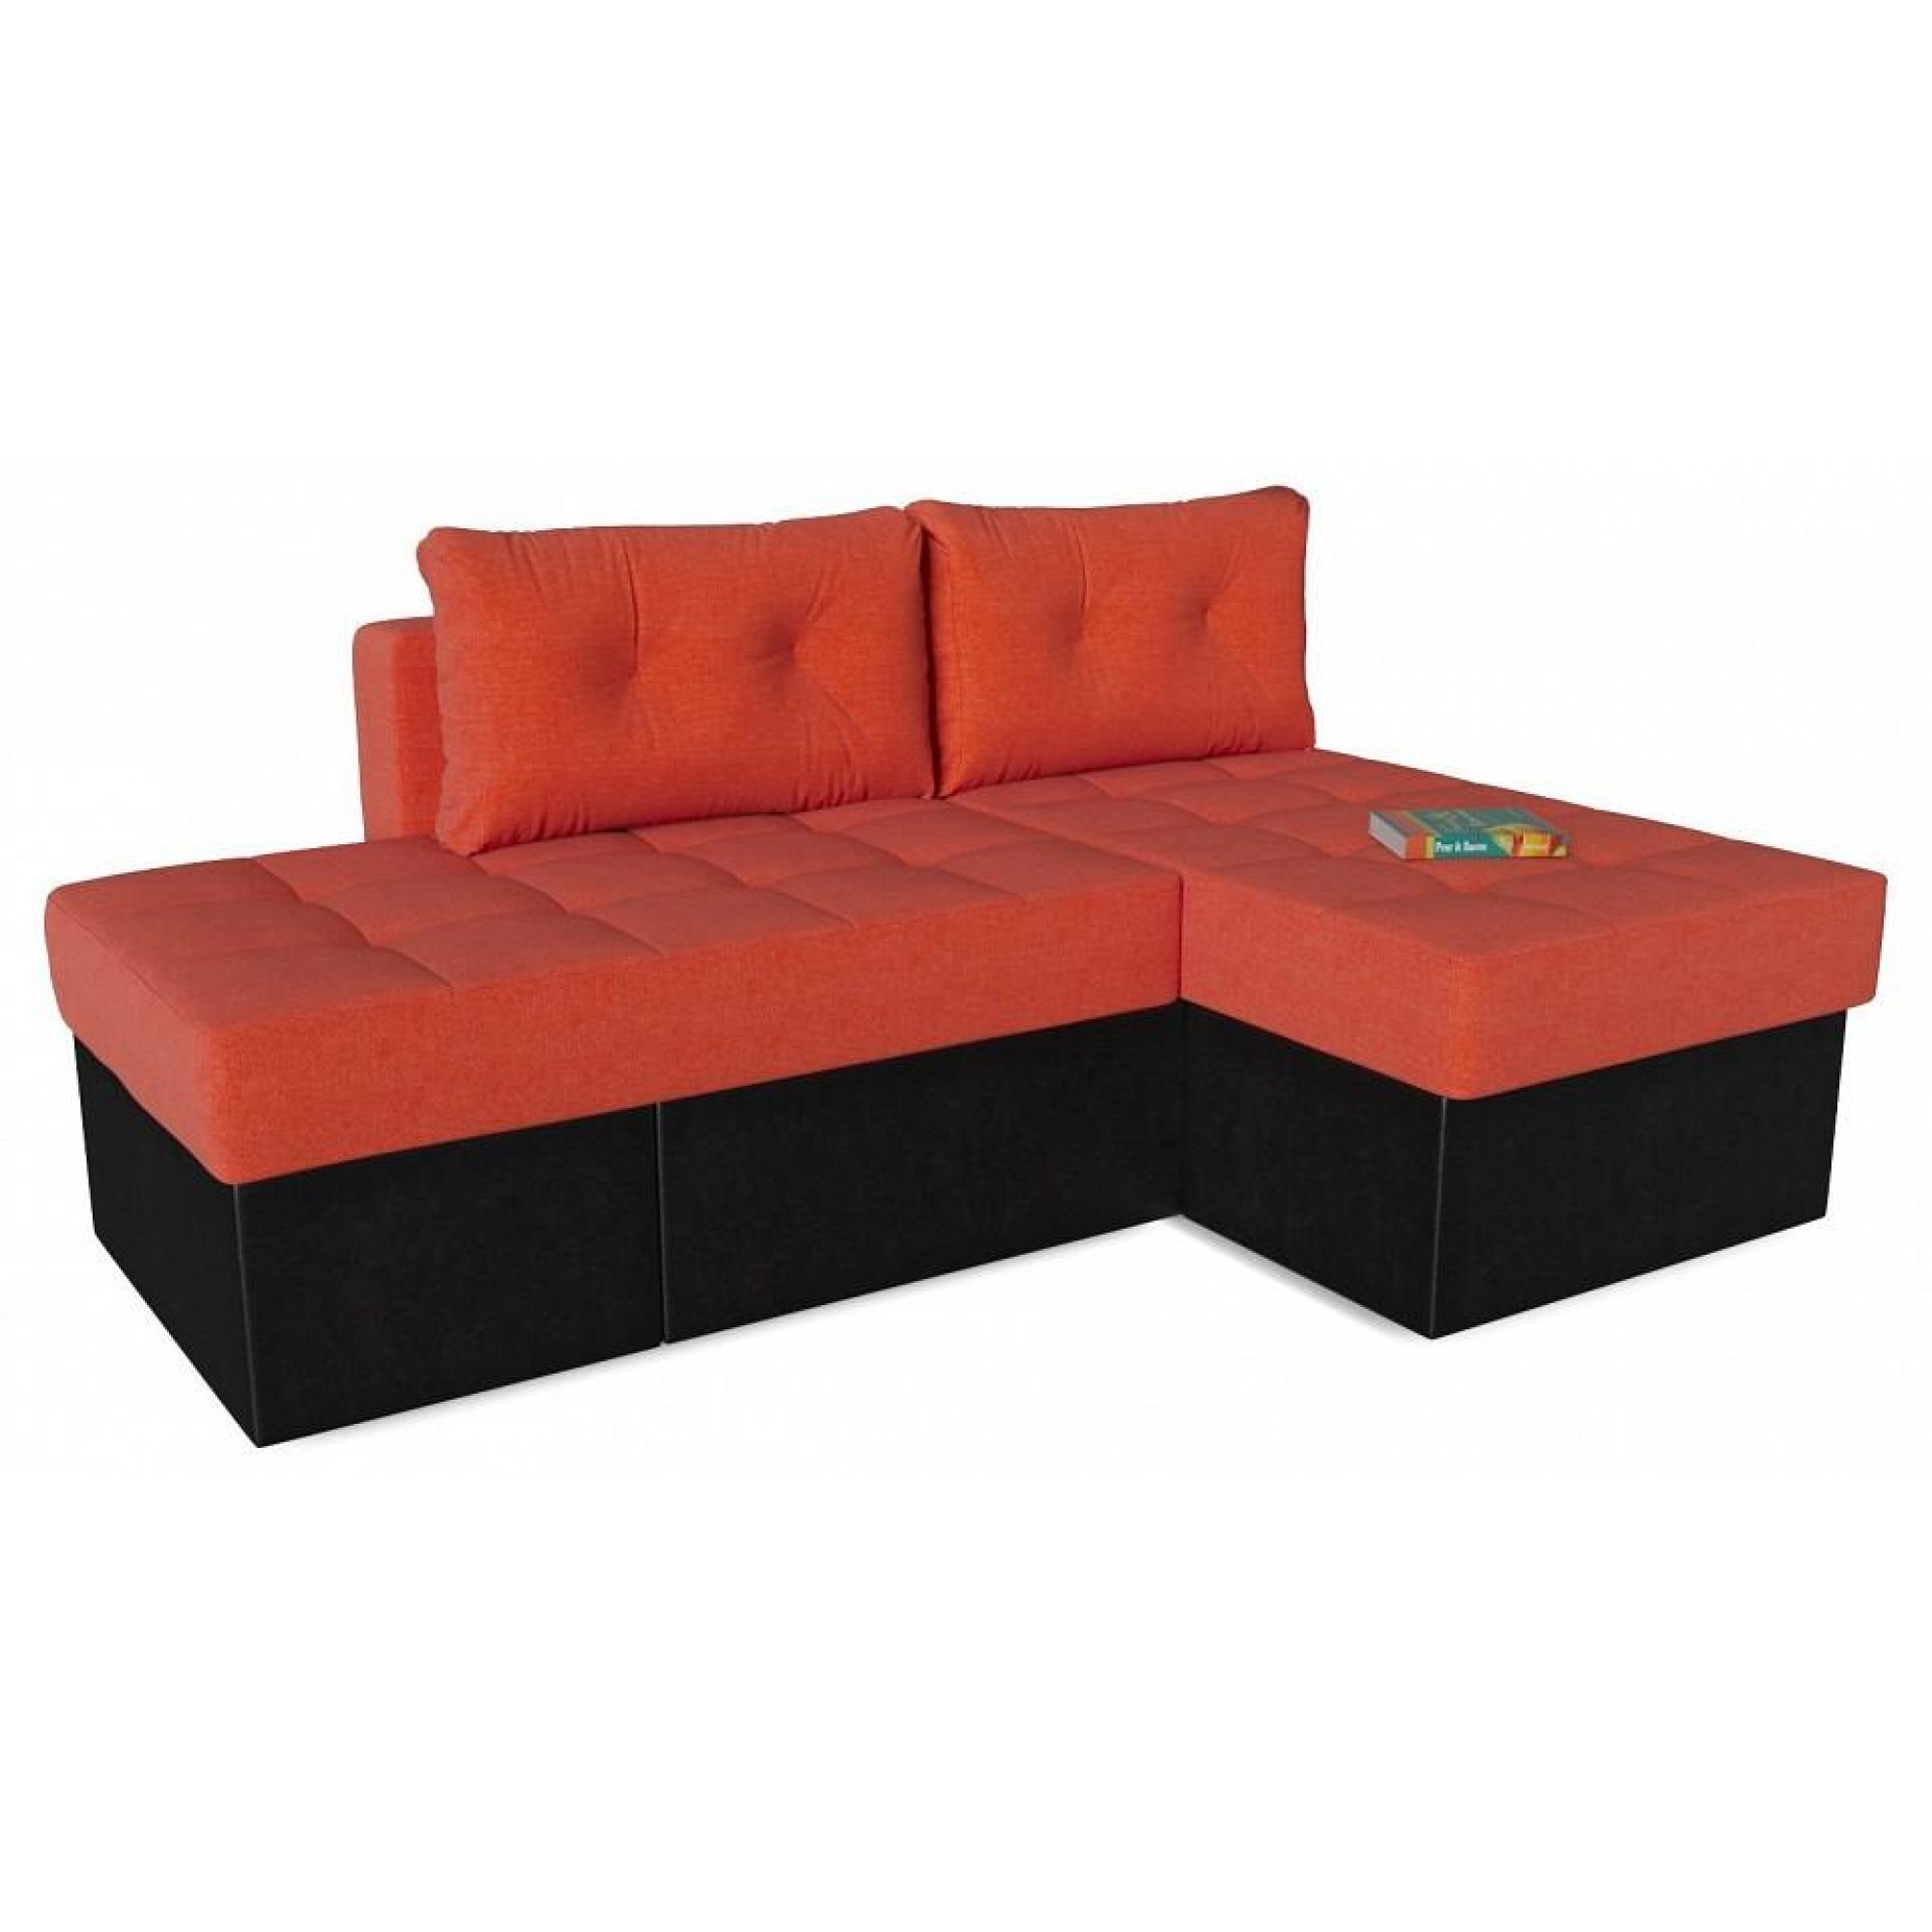 Диван-кровать Оливер Люкс (Лира) оранжевый SMR_A2491524672